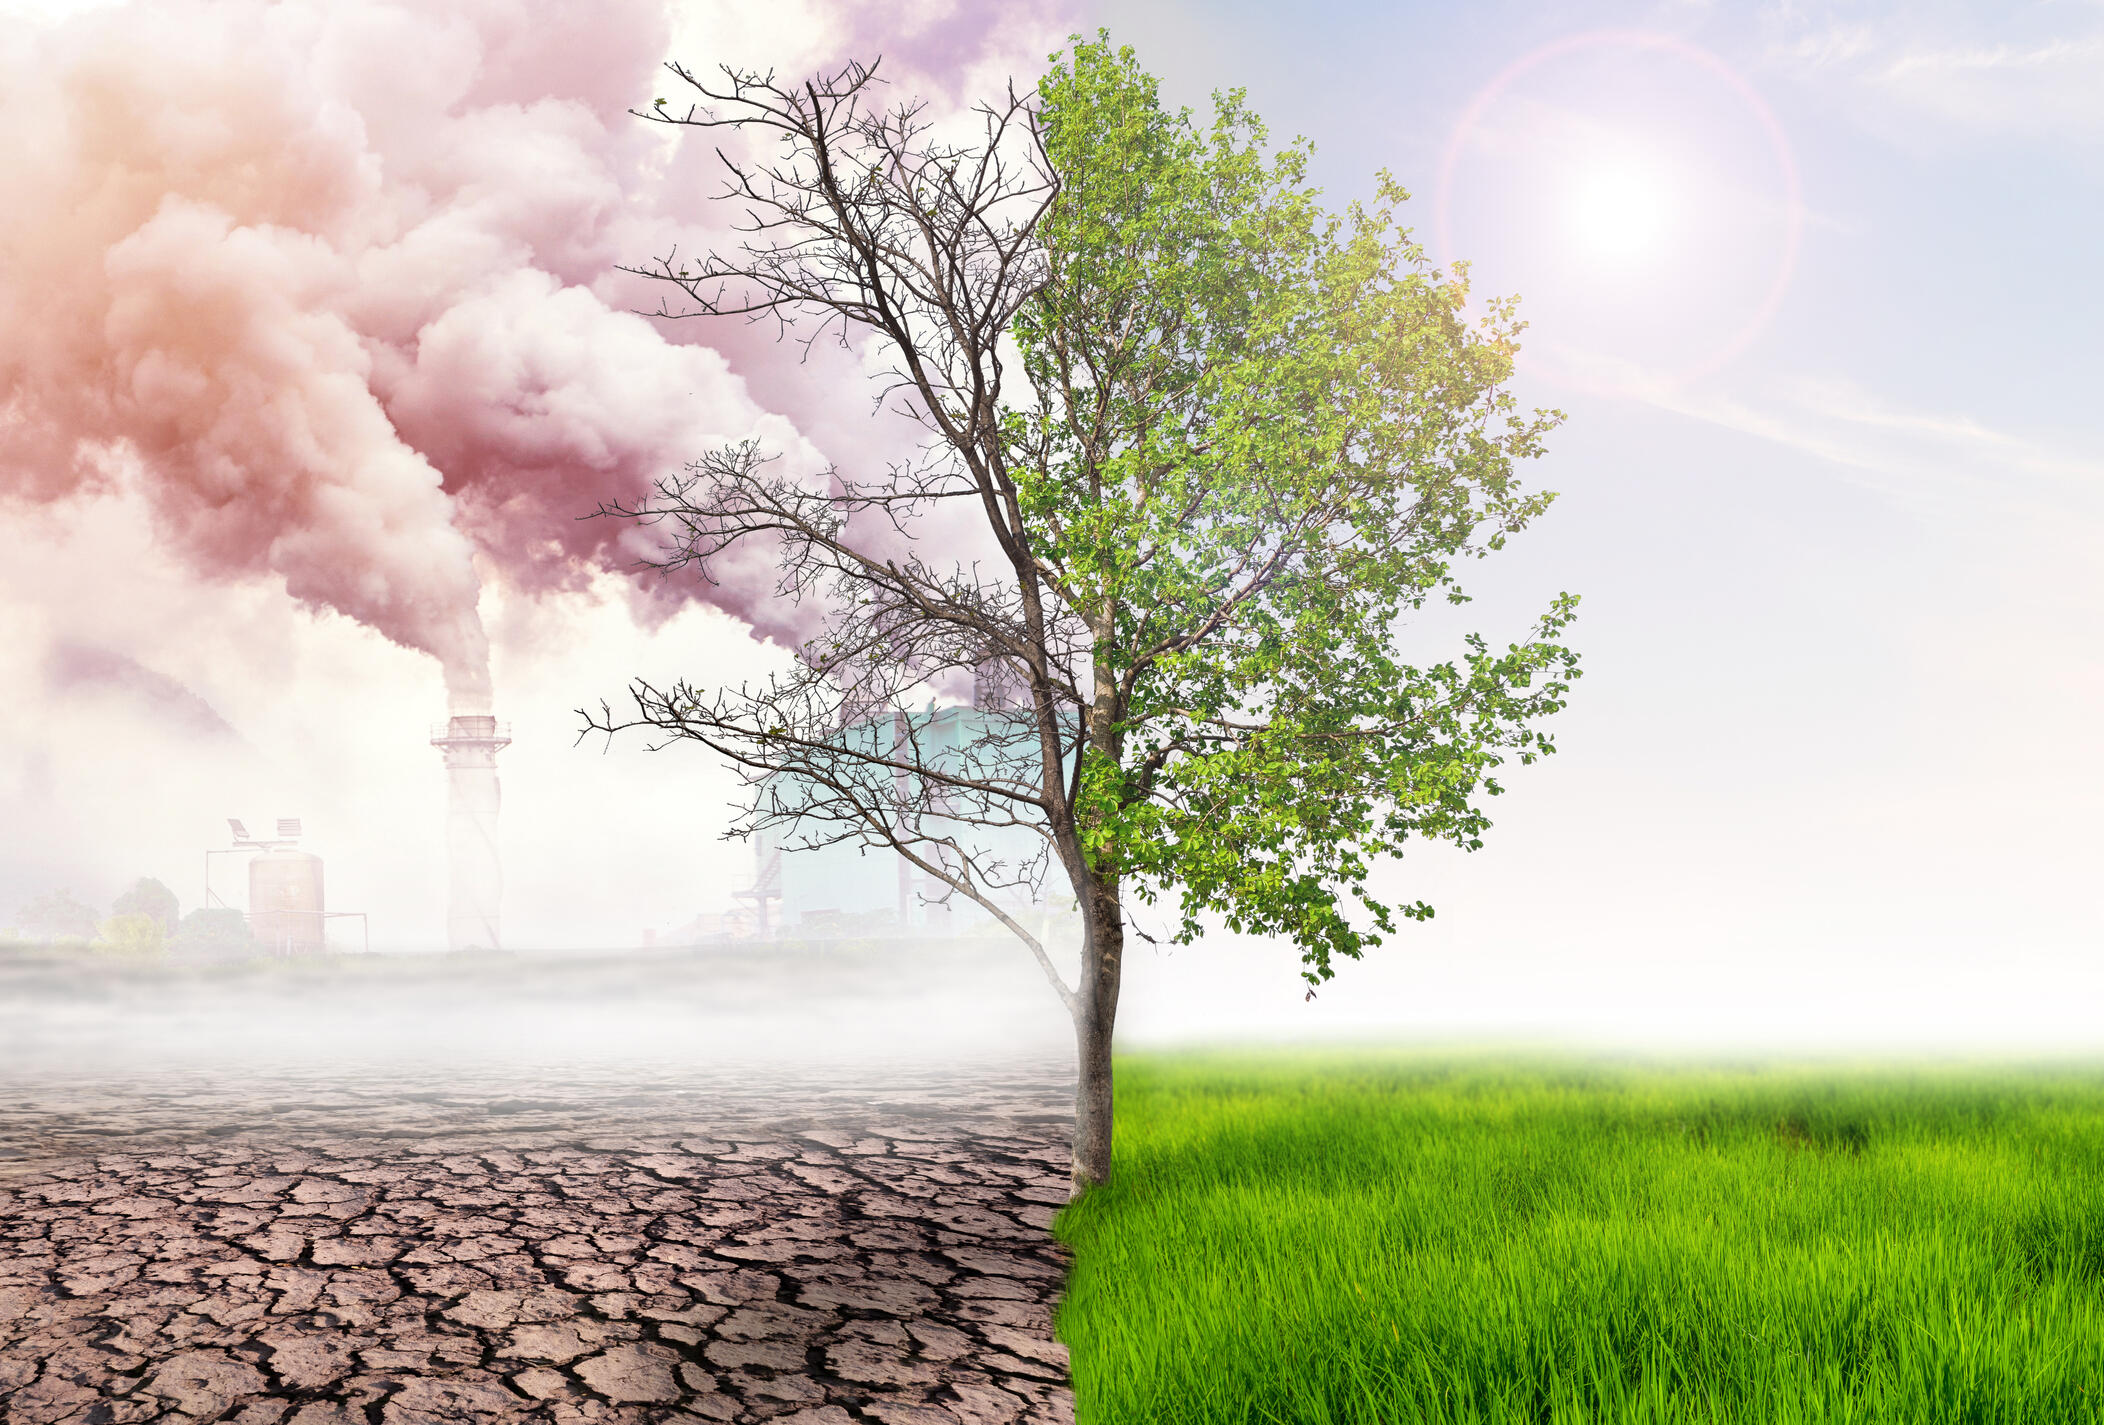 Auswirkungen der Luftverschmutzung durch menschliches Handeln: auf der einen Seite grüne Bäume und Wiese mit Sonne, auf der anderen Seite trockene Erde mit Fabrikrauch im Hintergrund.